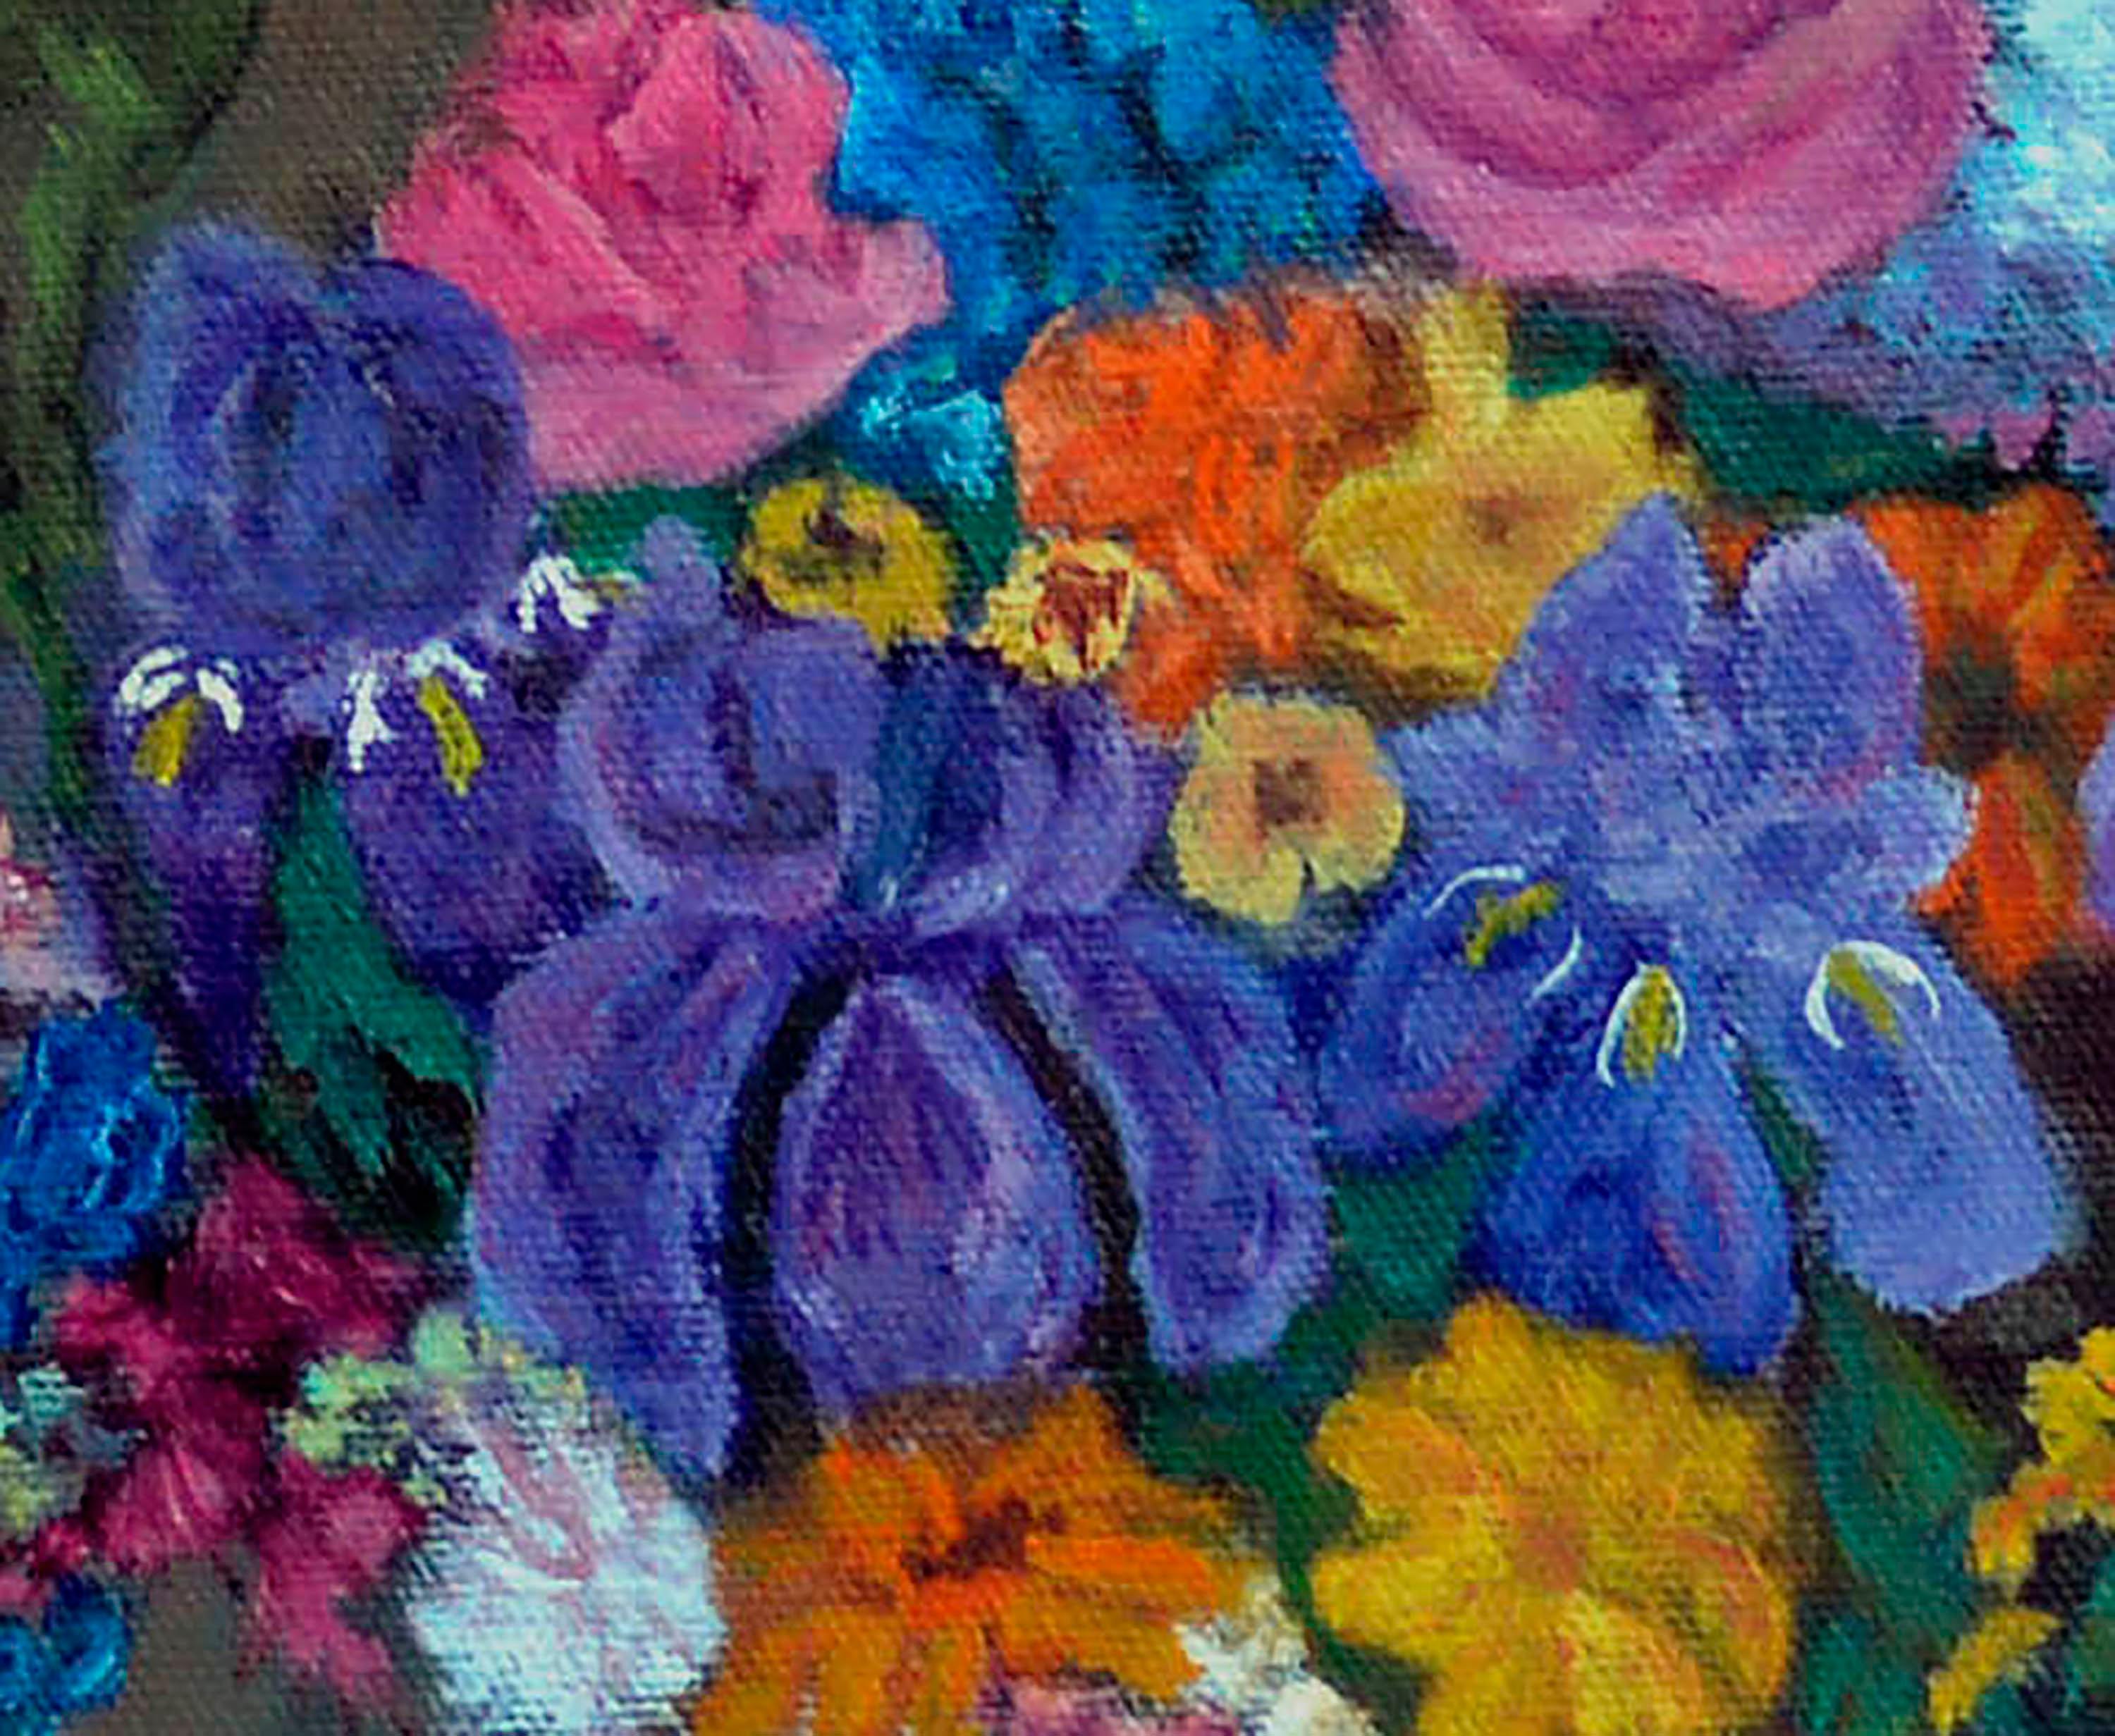 Nature morte florale aux couleurs vives d'un bouquet de printemps éblouissant et détaillé comprenant des iris, des fleurs de cerisier, des roses et d'autres fleurs magnifiques par Barbara Wilson (américaine, 20e siècle). Issue d'une collection de